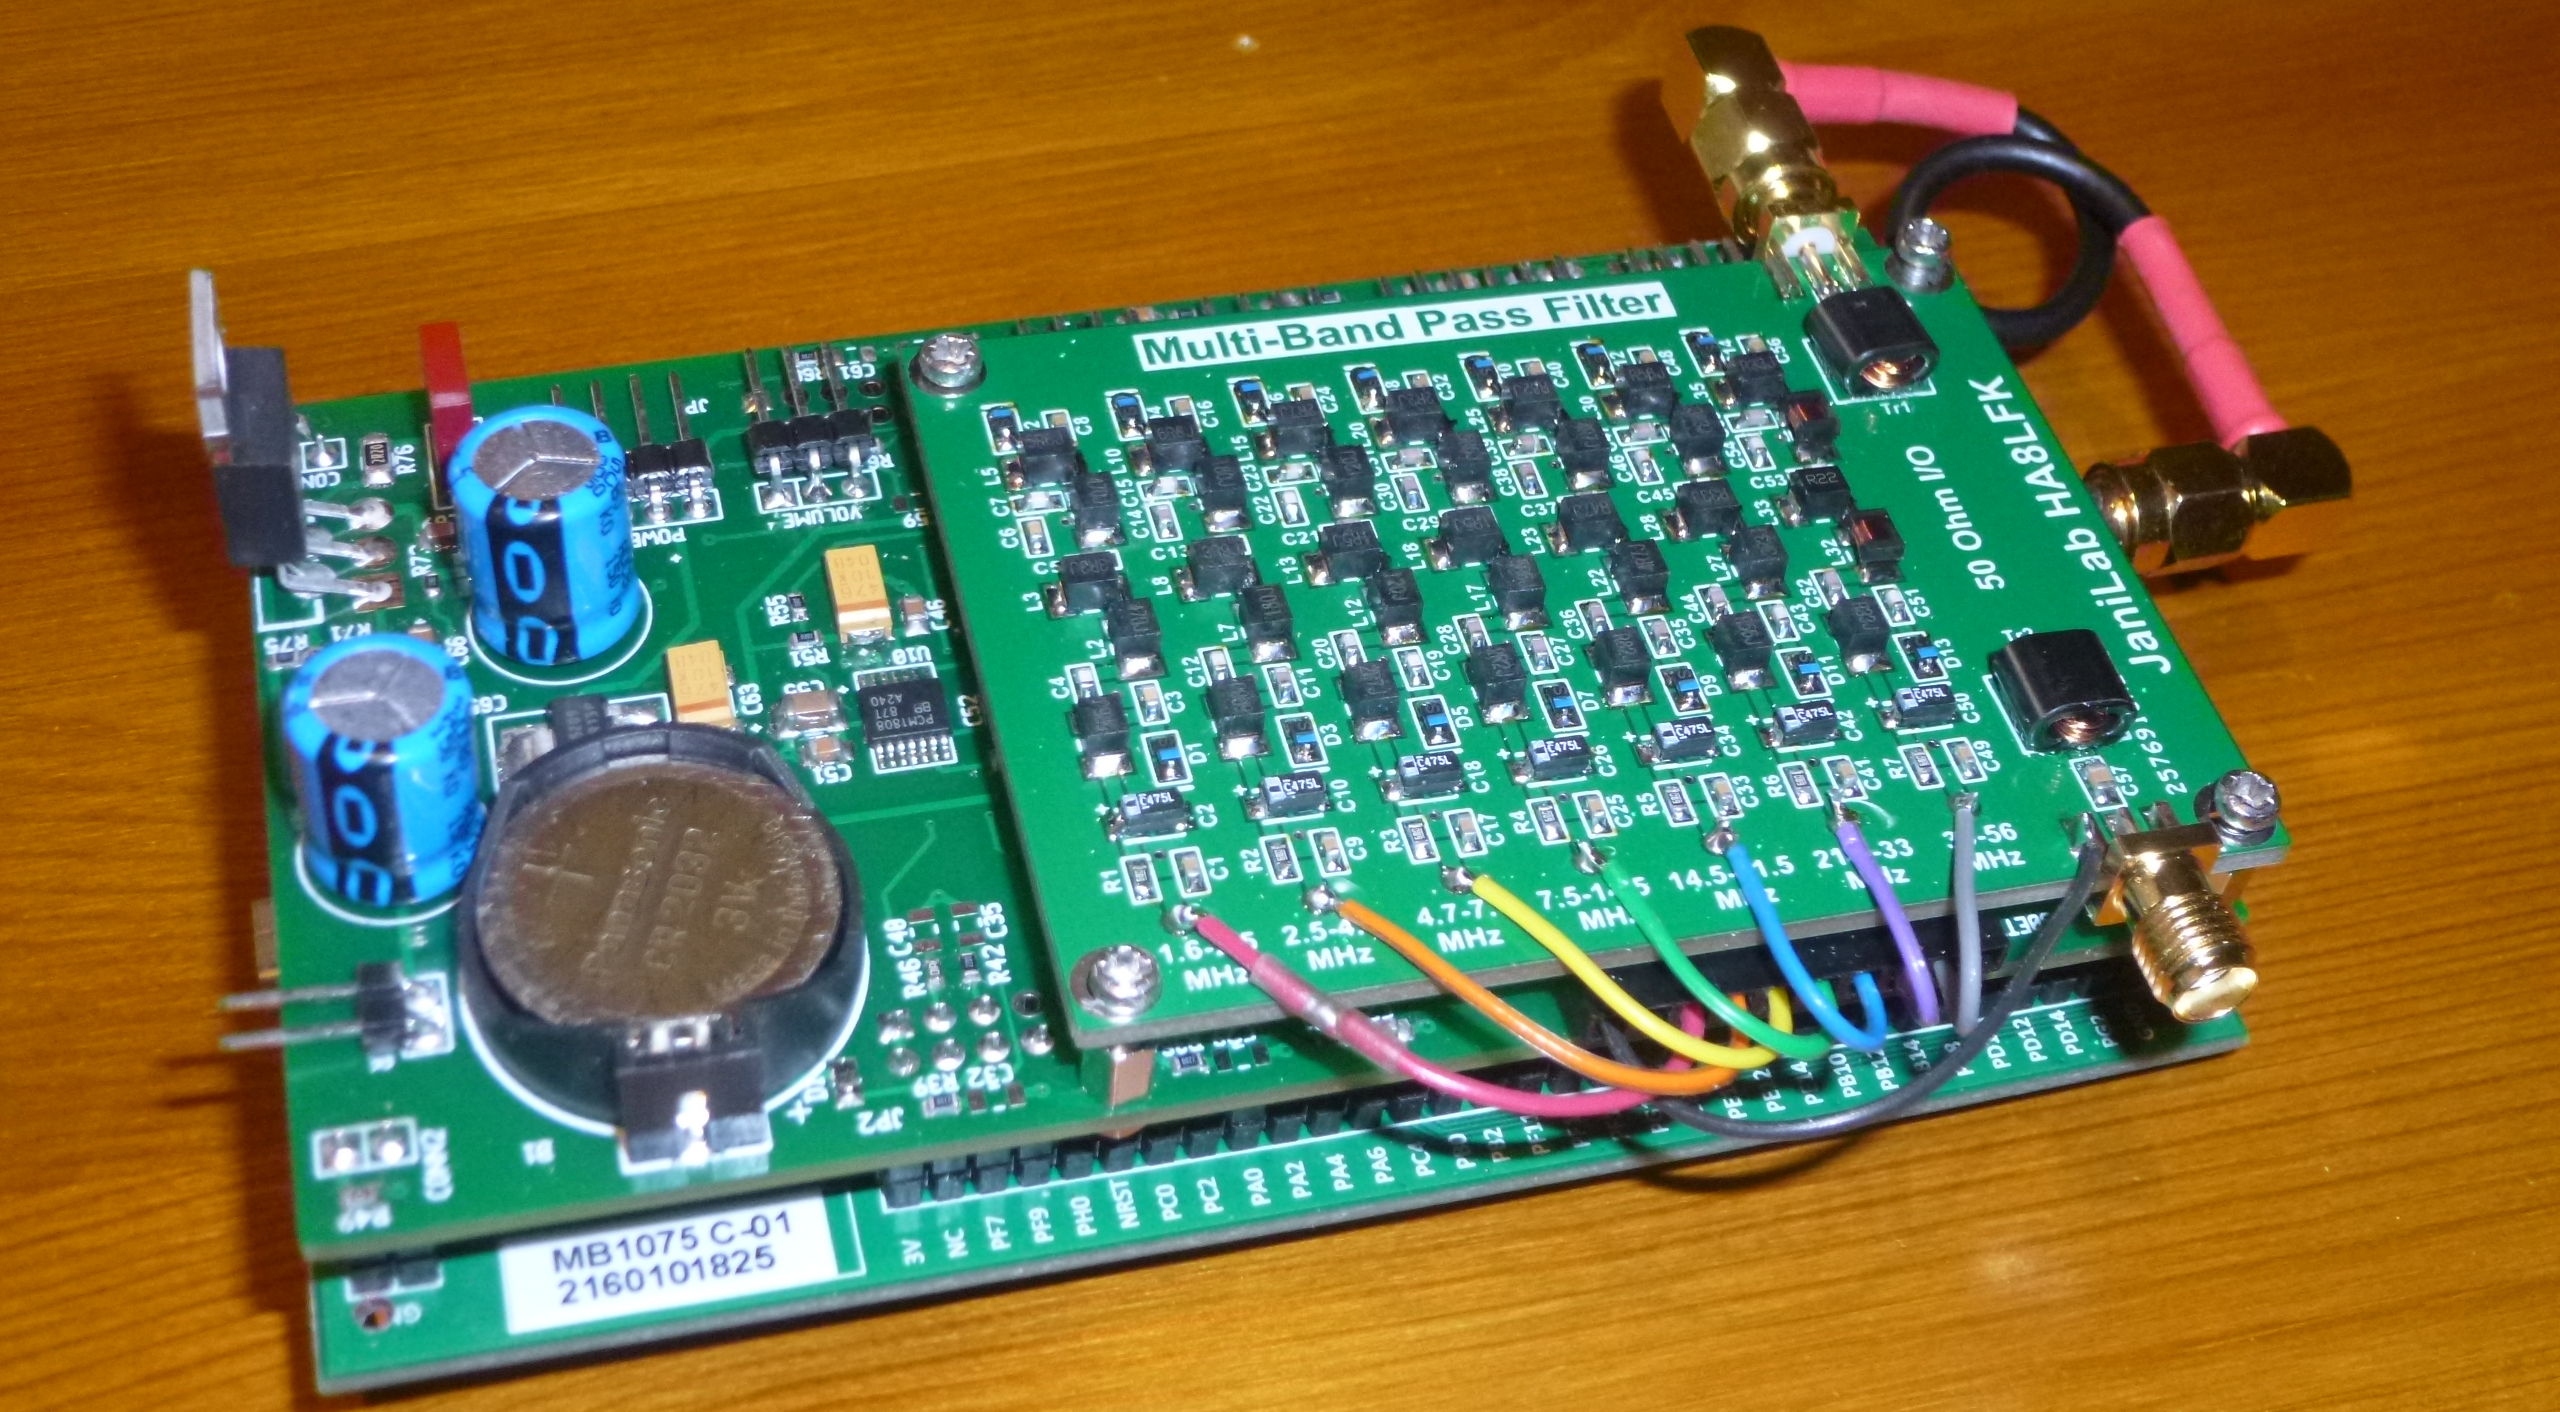 G0ETP STM32 HF SDR Rx V2 assembly with HA8LFK filter board